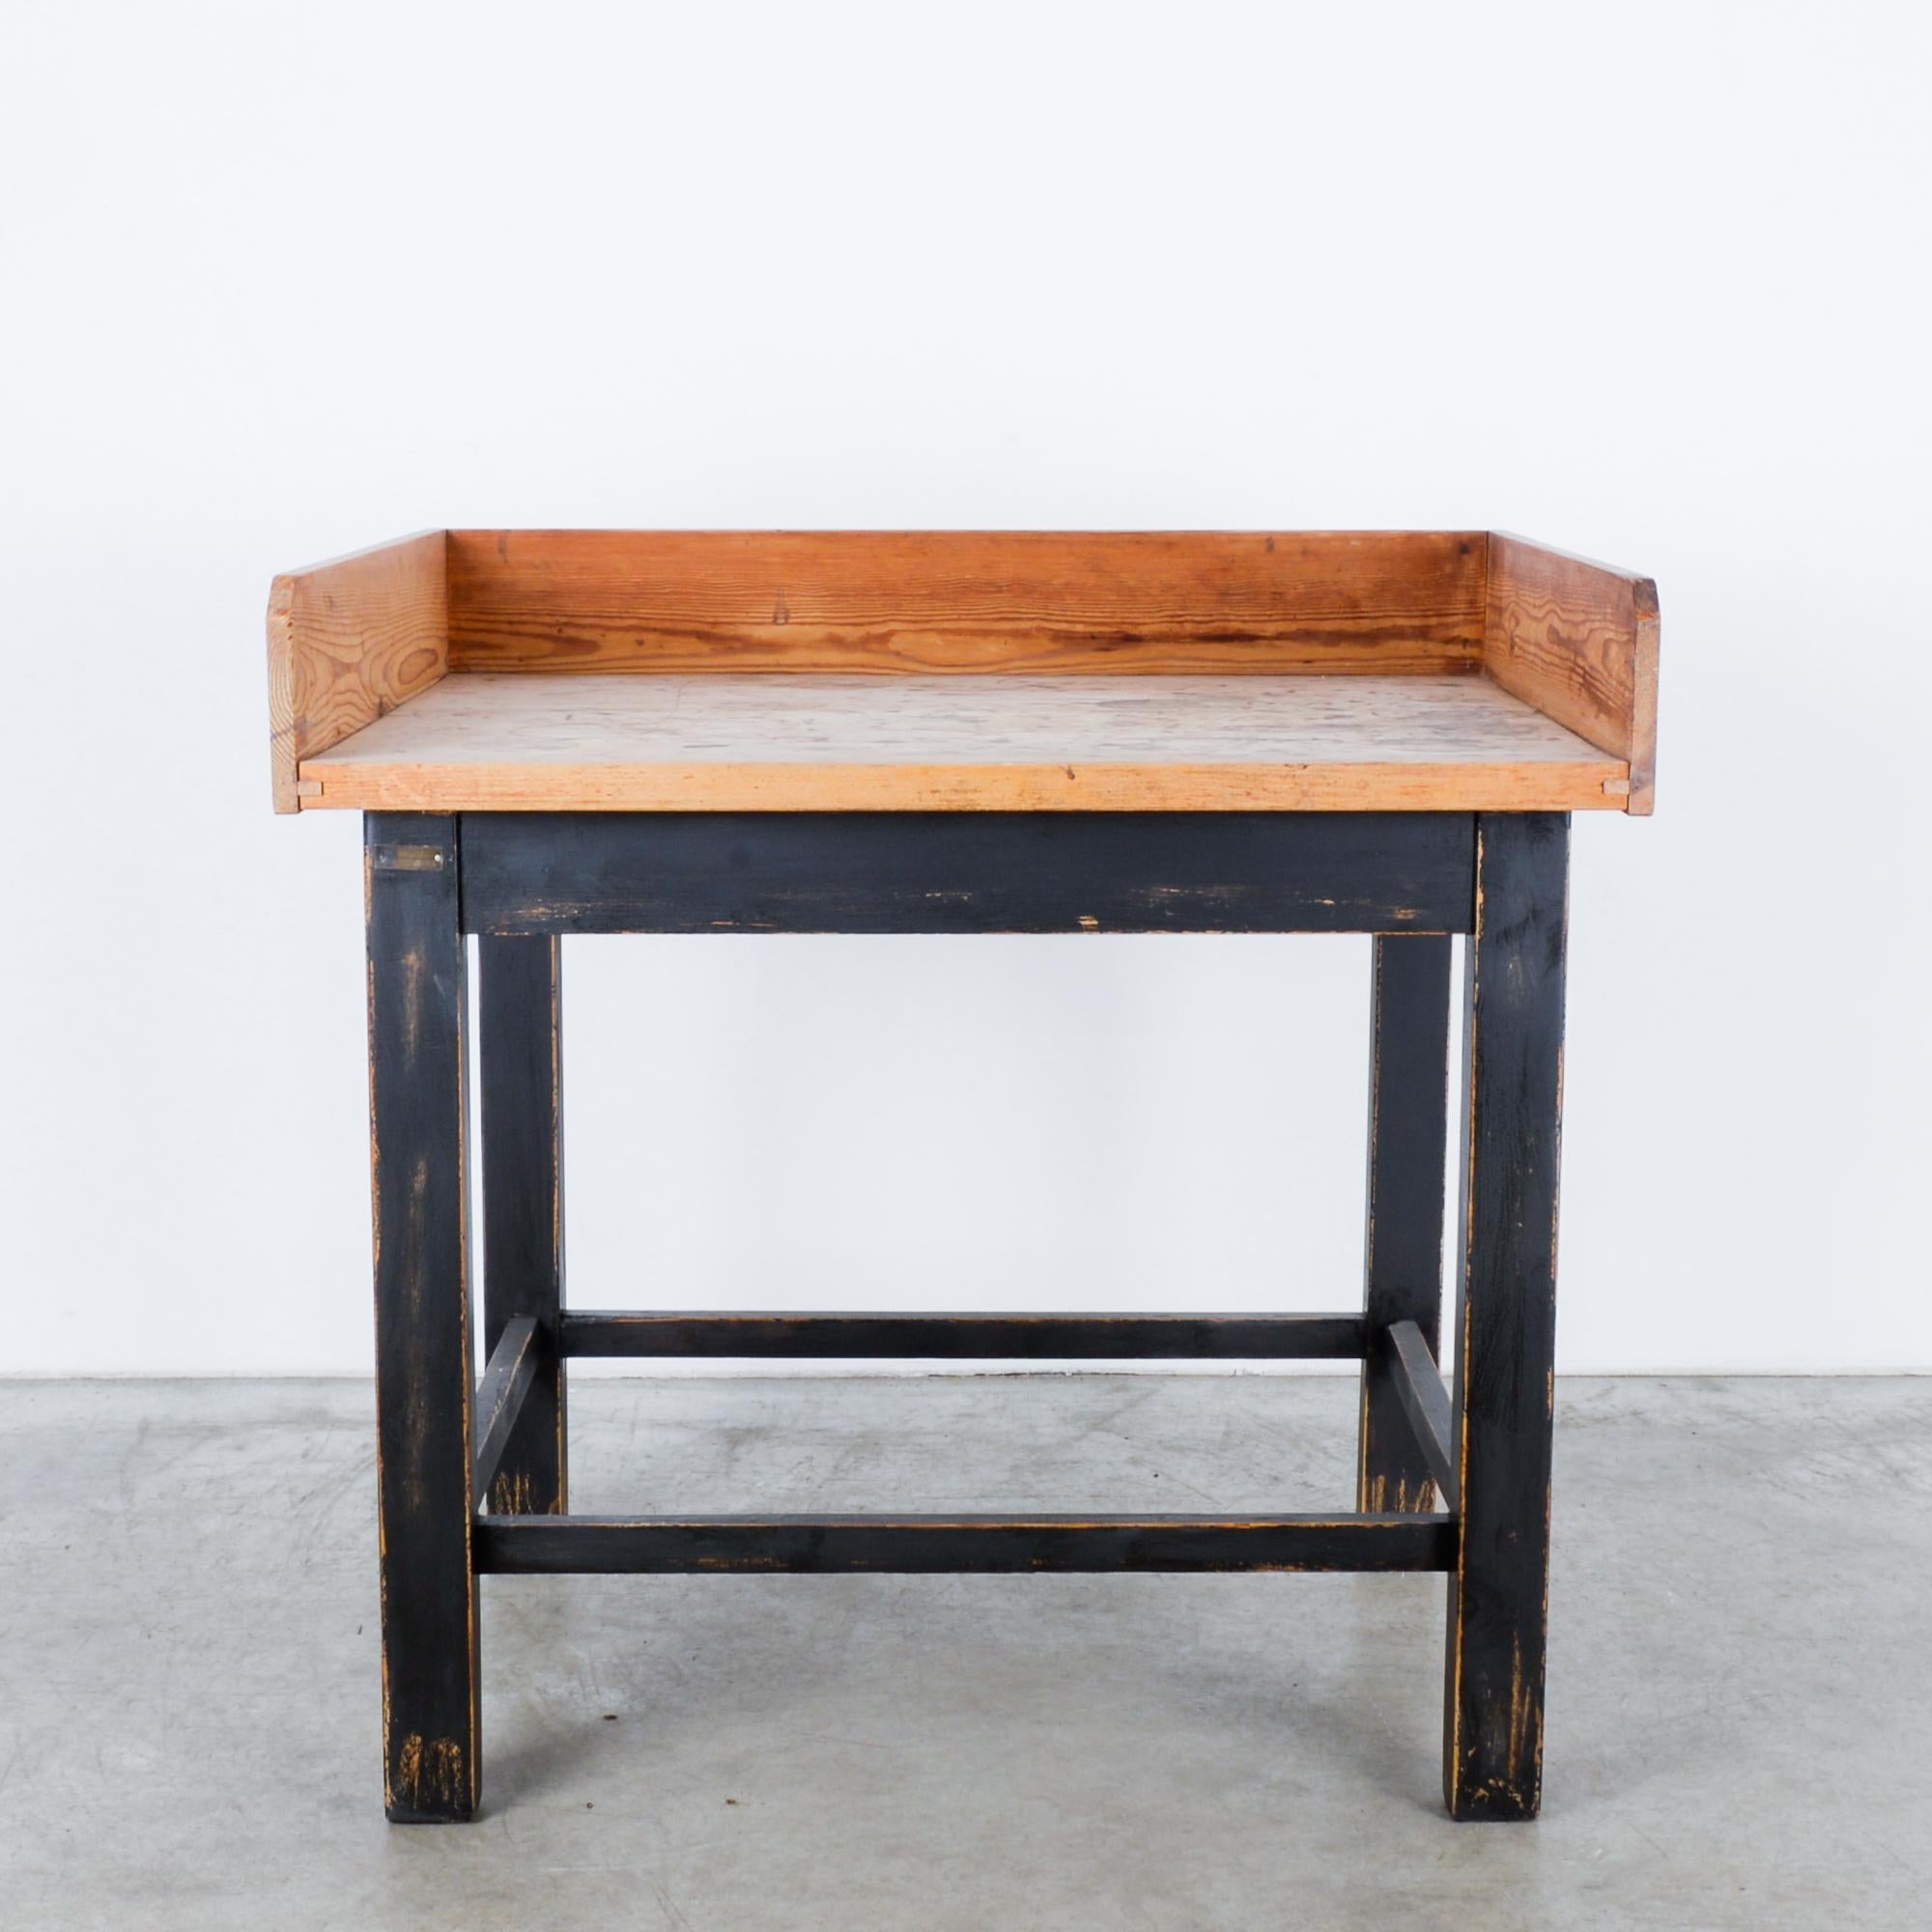 Ein hölzerner Bäckertisch aus Mitteleuropa, um 1950. Ein quadratischer, schwarz lackierter Rahmen trägt eine Arbeitsplatte aus Naturholz. Holzpaneele an drei Seiten der Tischplatte bilden einen geschlossenen Arbeitsbereich, ein praktischer Aspekt,